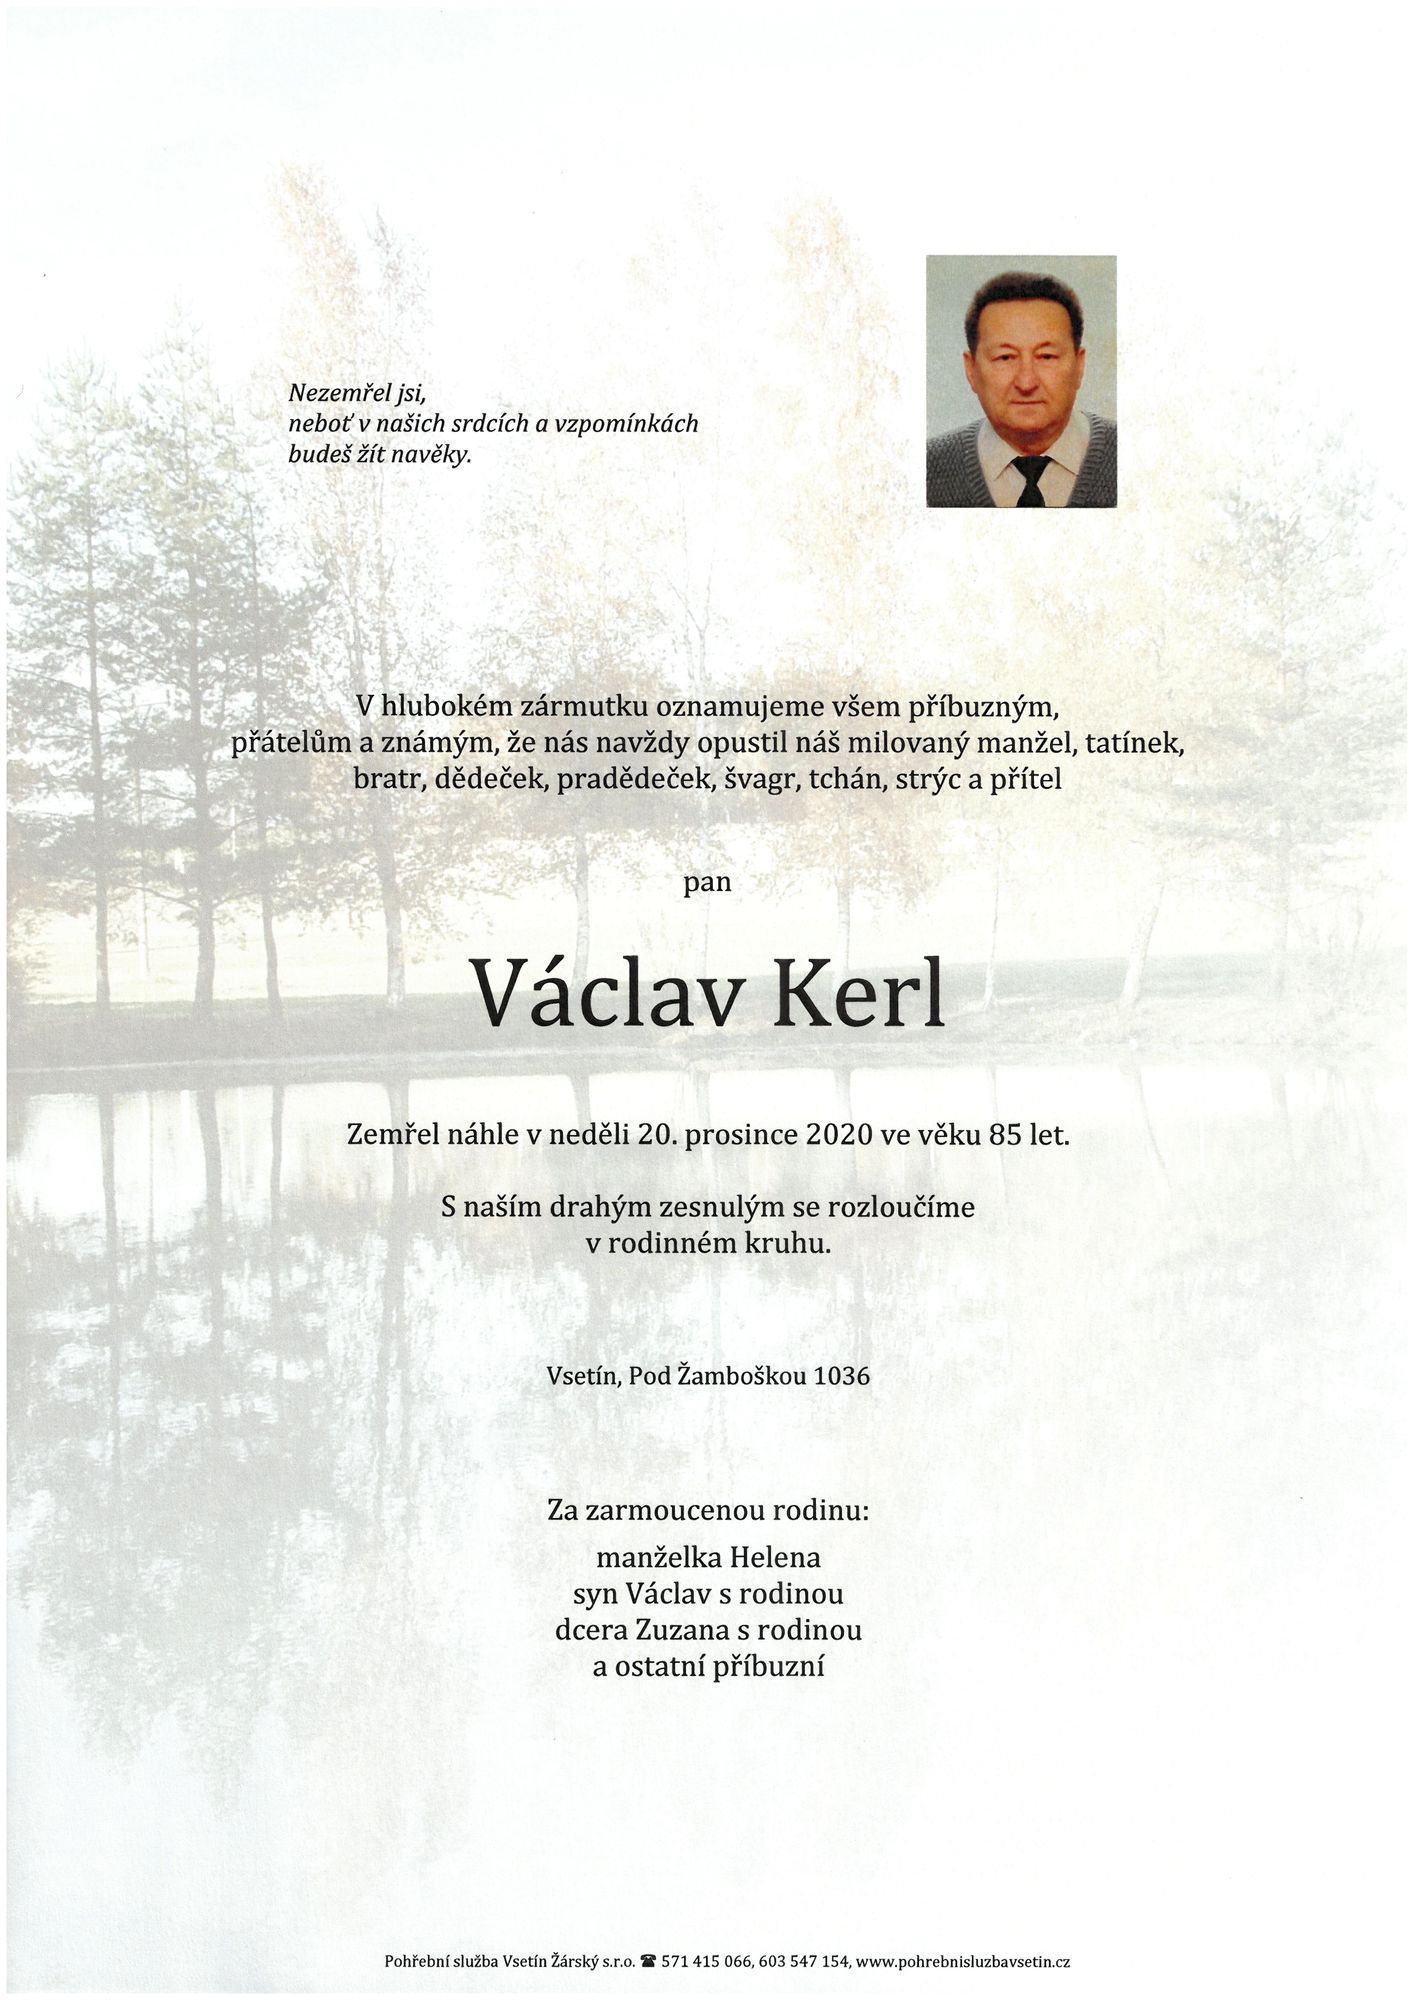 Václav Kerl